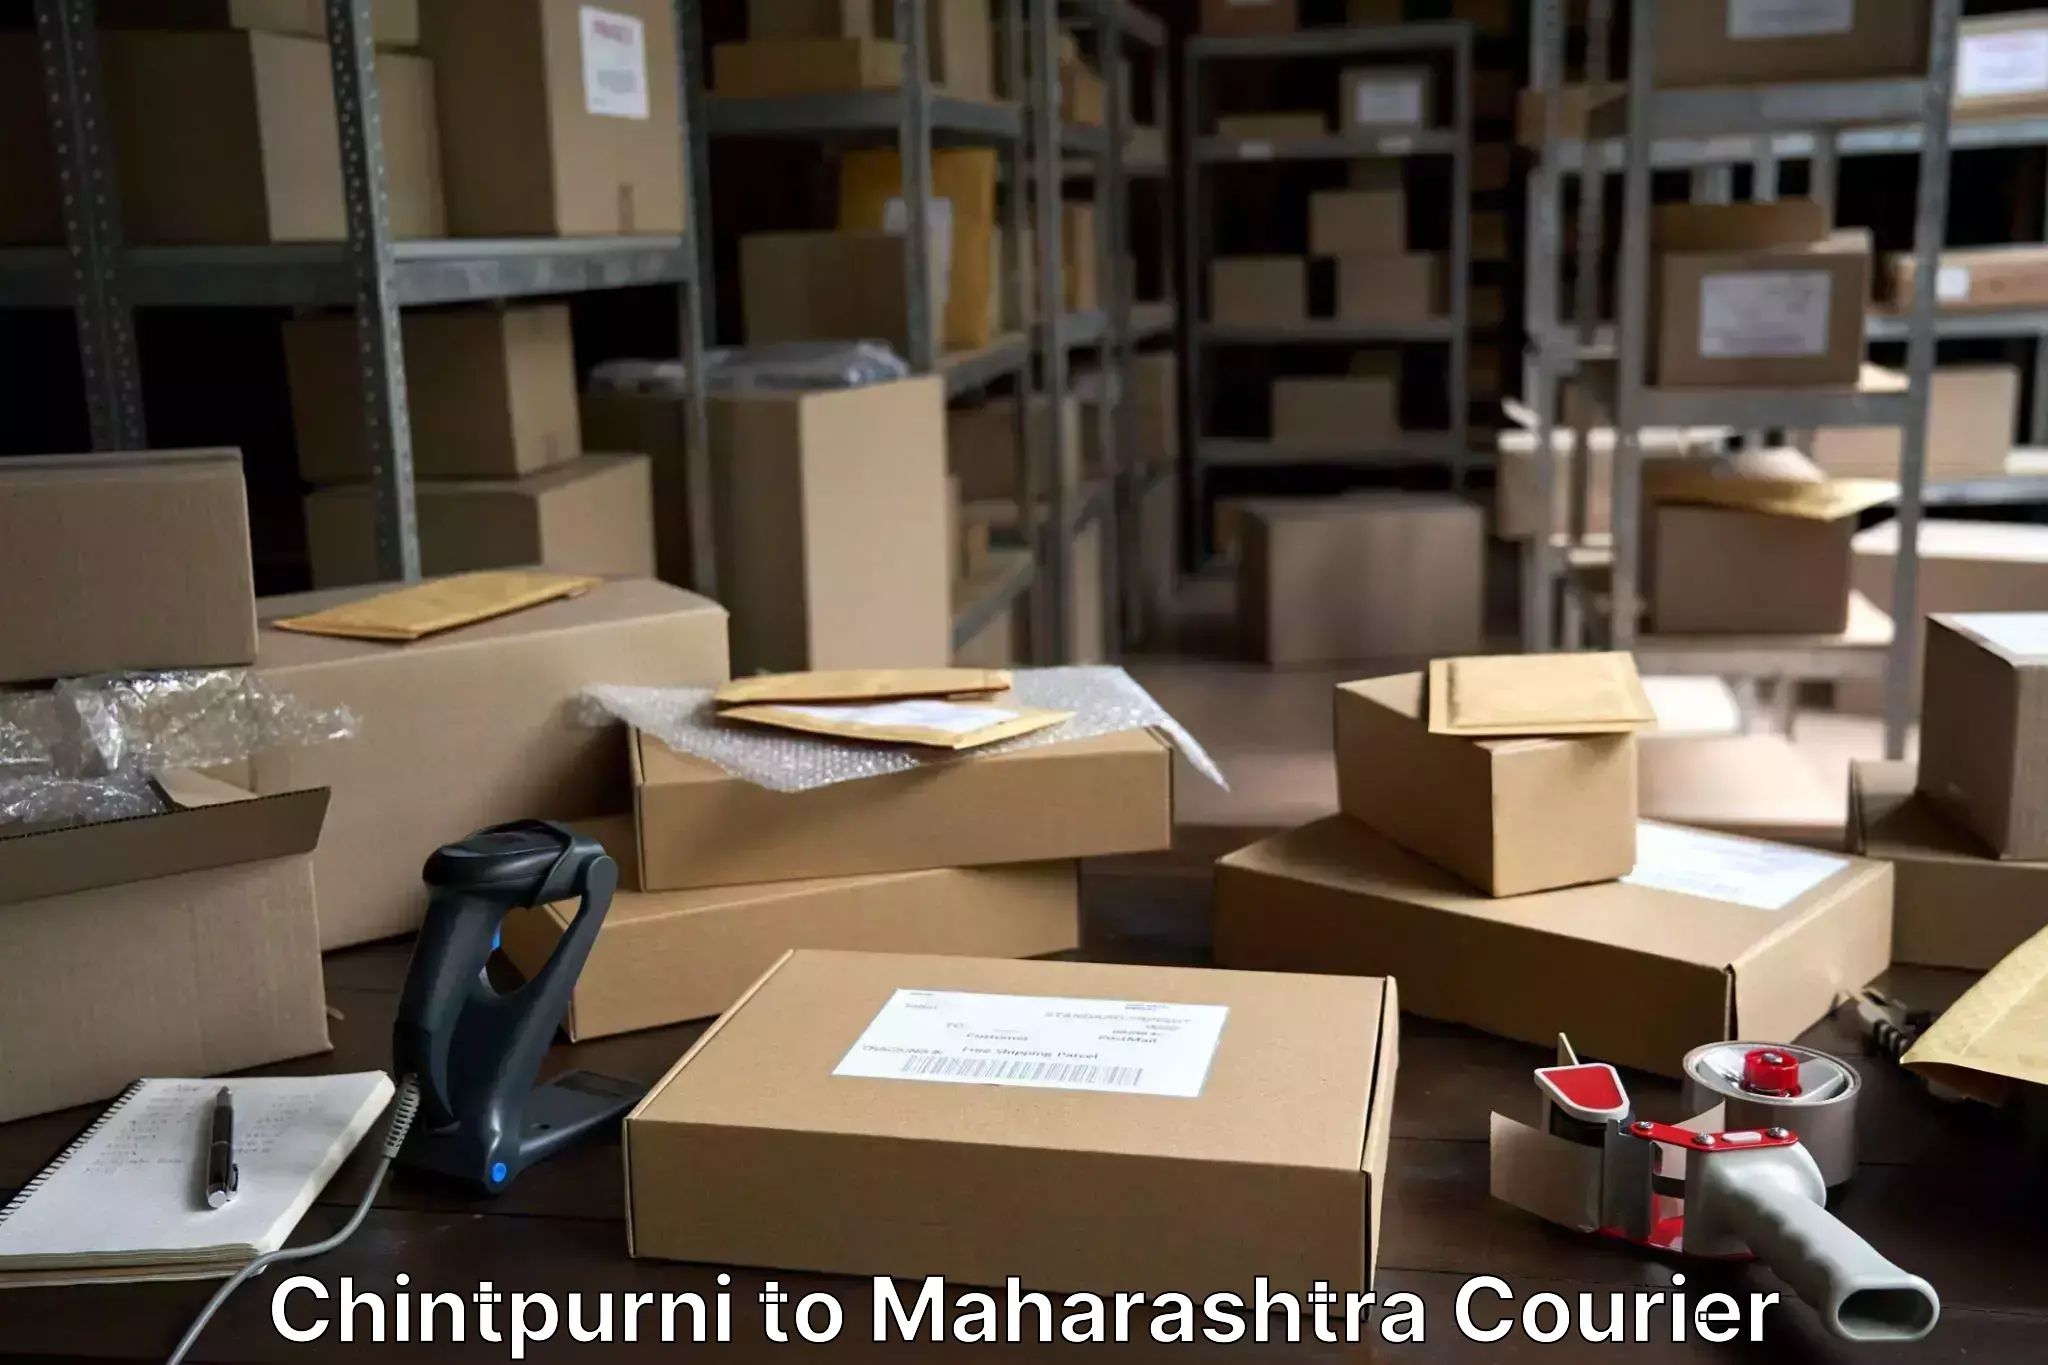 Baggage shipping experts Chintpurni to Maharashtra